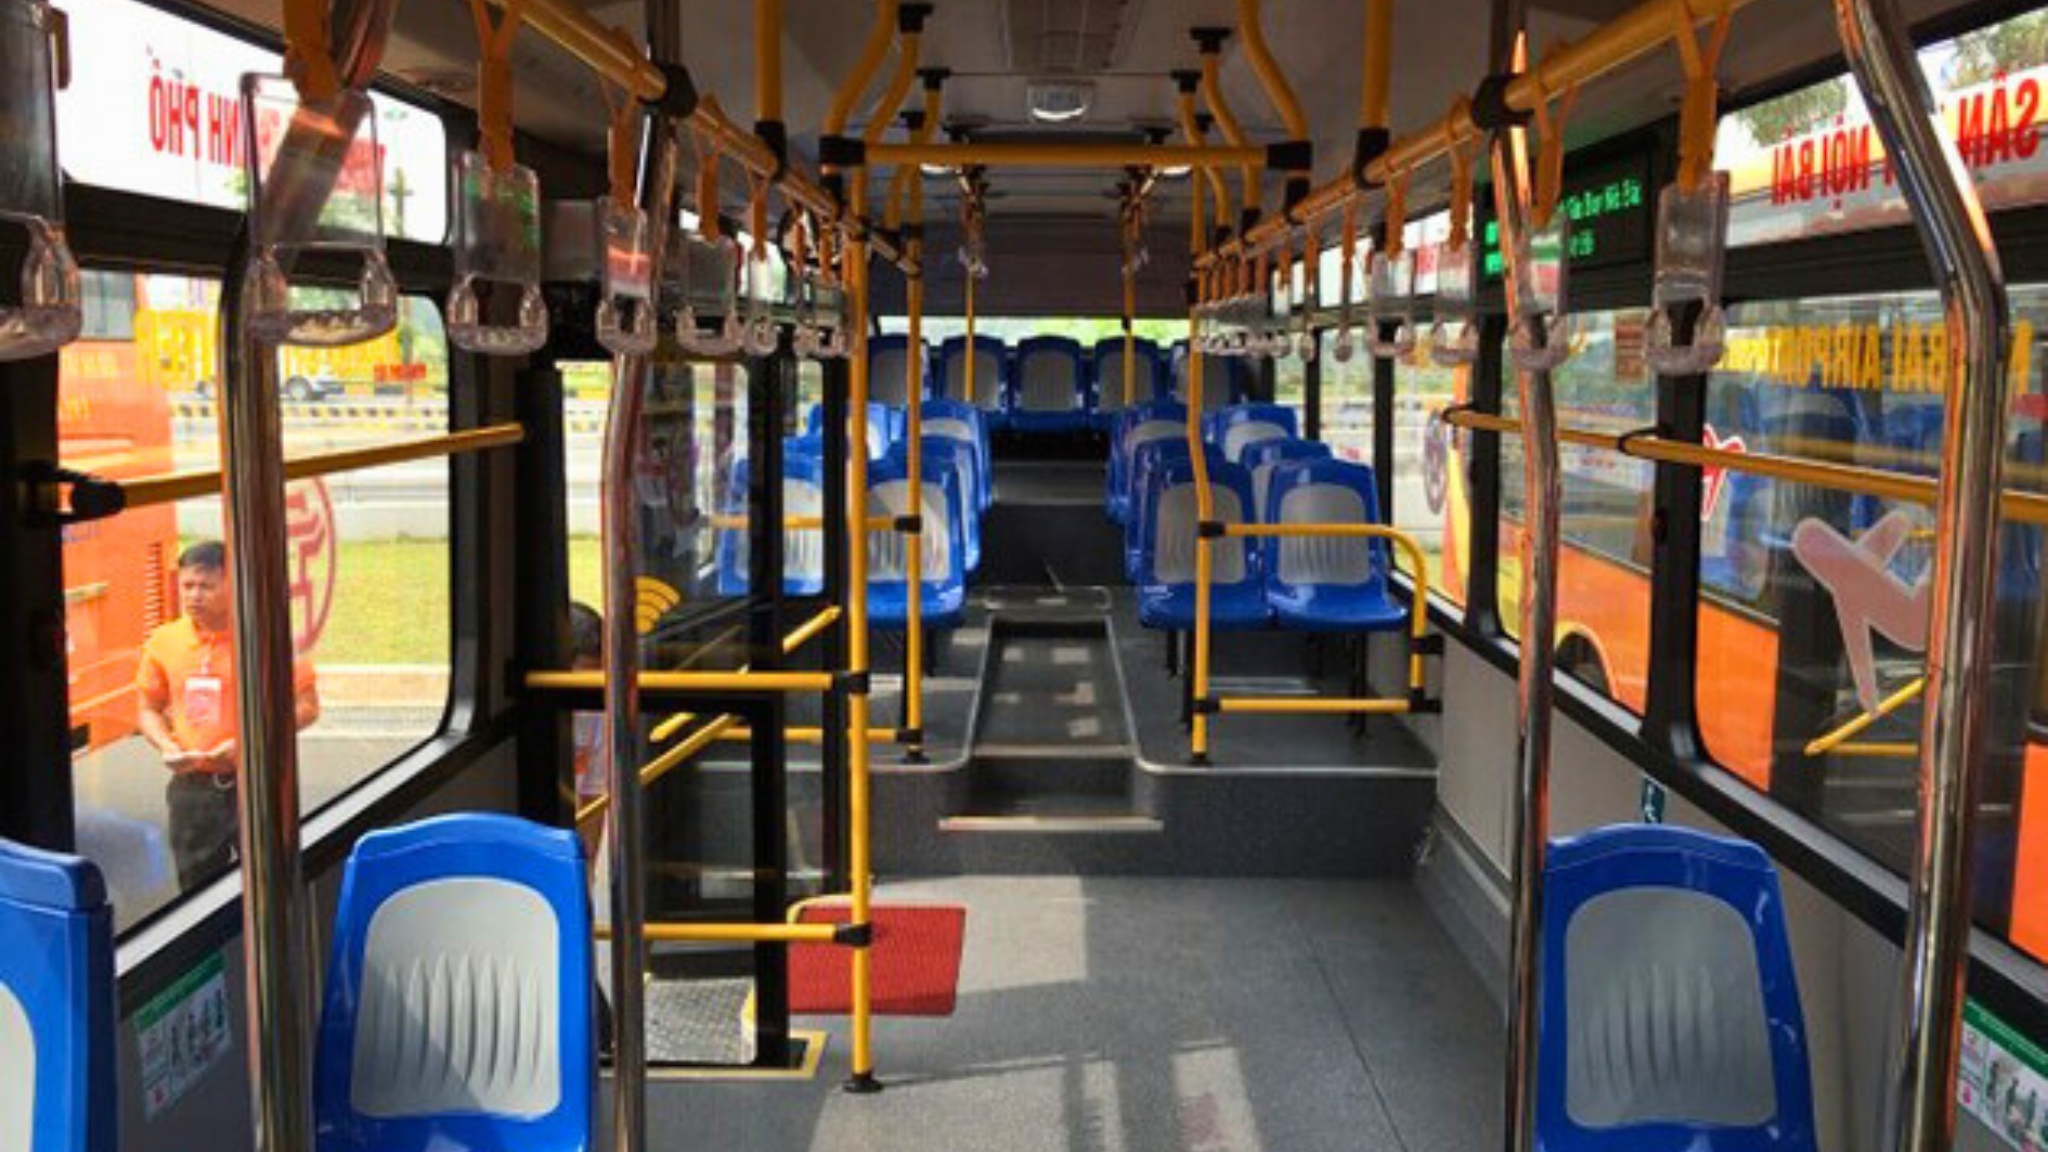 Inside The Bus 86 Hanoi